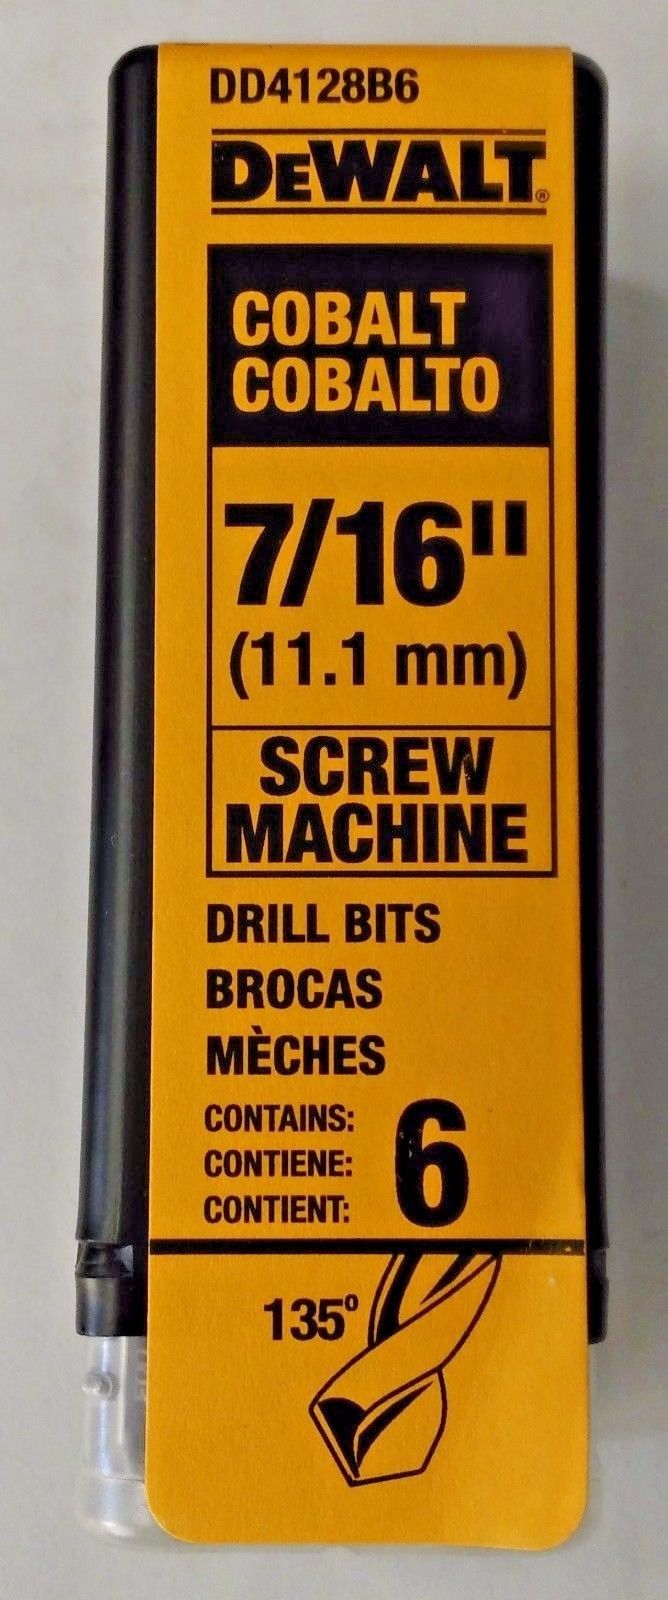 Dewalt DD4128B6 7/16" Cobalt Screw Machine Drill Bits 6 Pack Germany